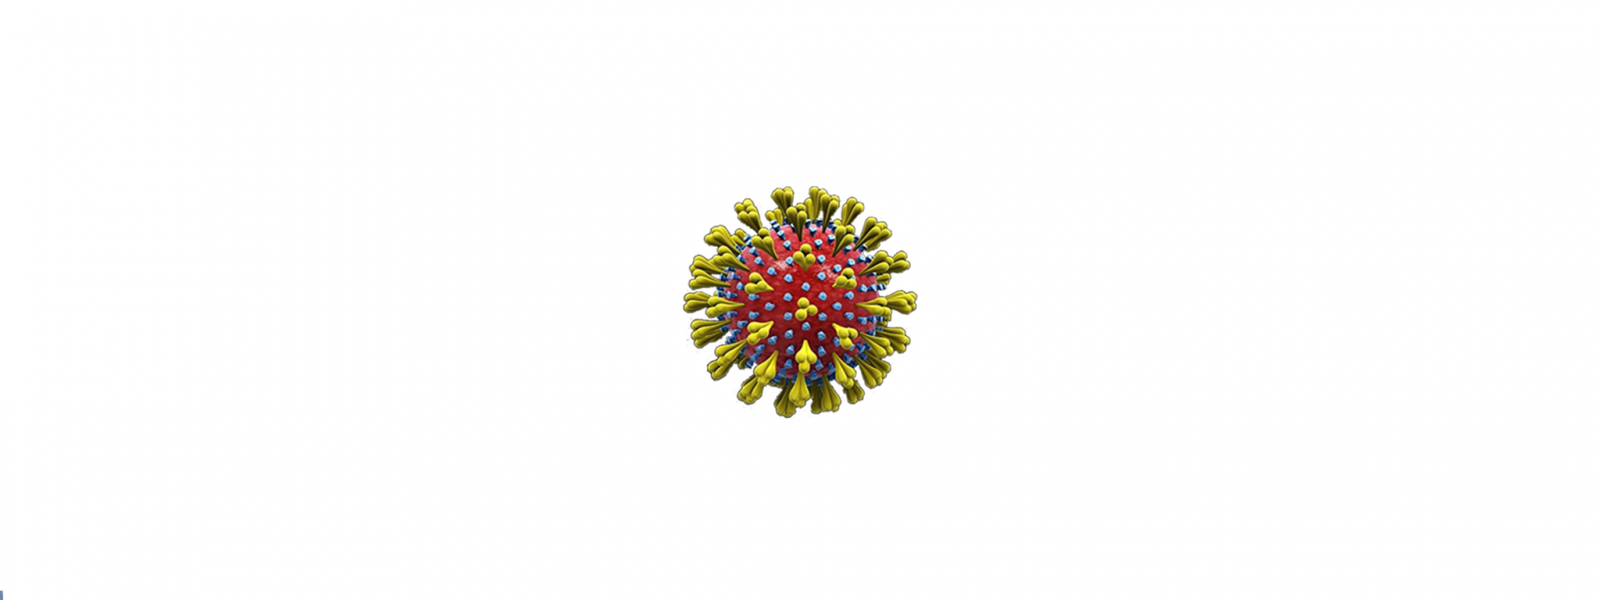 Coronavirus. L’aggiornamento settimanale in Emilia-Romagna: dal 27 gennaio al 2 febbraio 2023 registrati 2.397 nuovi casi, oltre 3.700 guariti. In calo i ricoveri nei reparti Covid (-108) e nelle terapie intensive (-2)